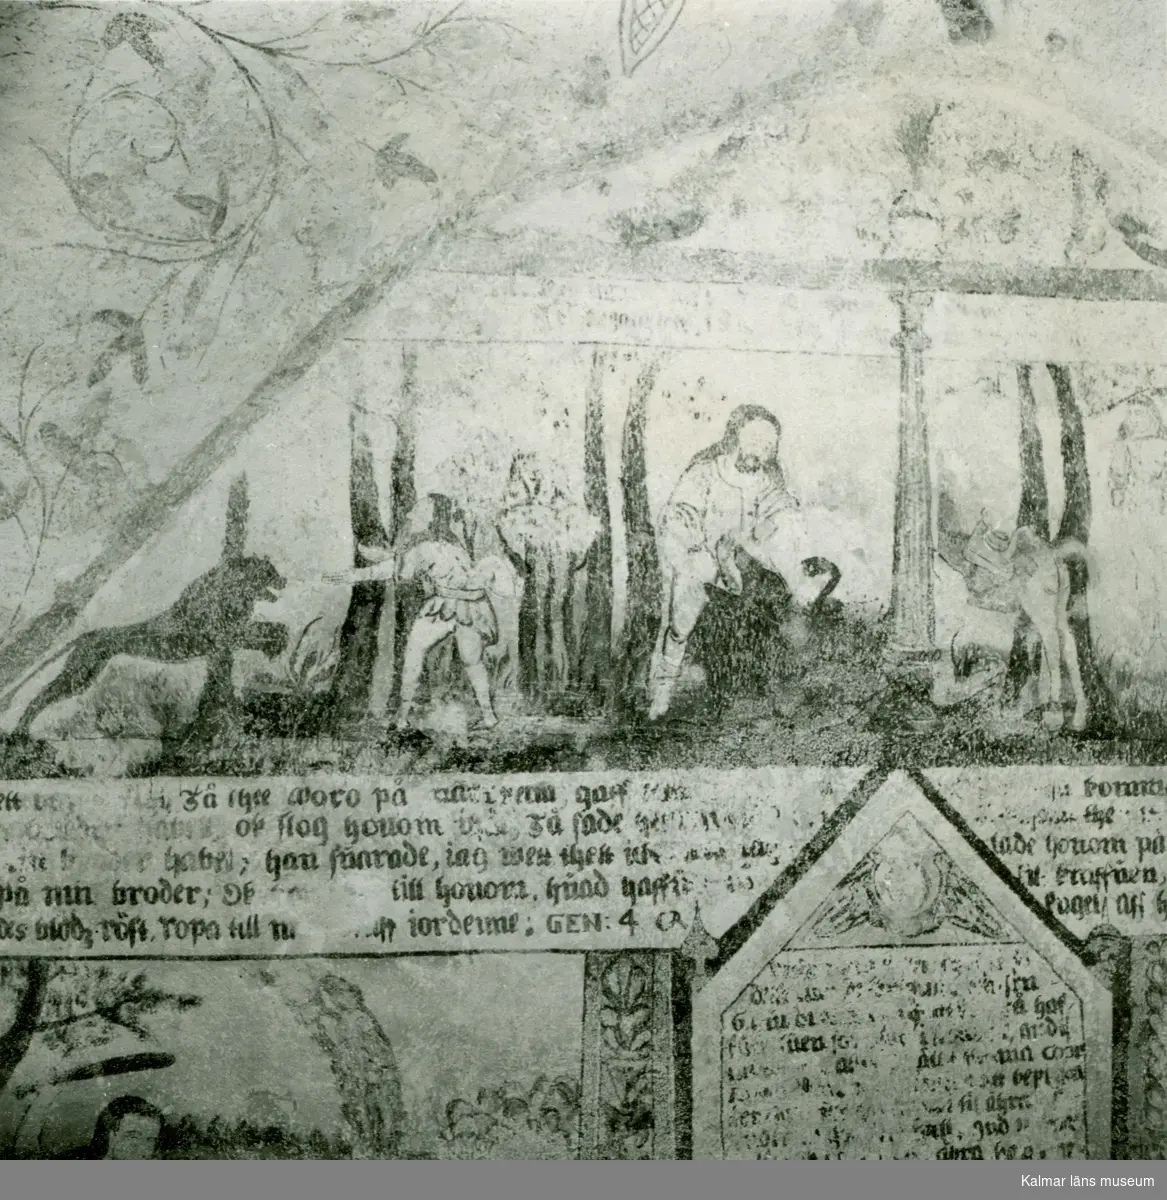 Målning på korväggen i Gärdslösa kyrka med bibliskt motiv från berättelsen om Kain och Abel.